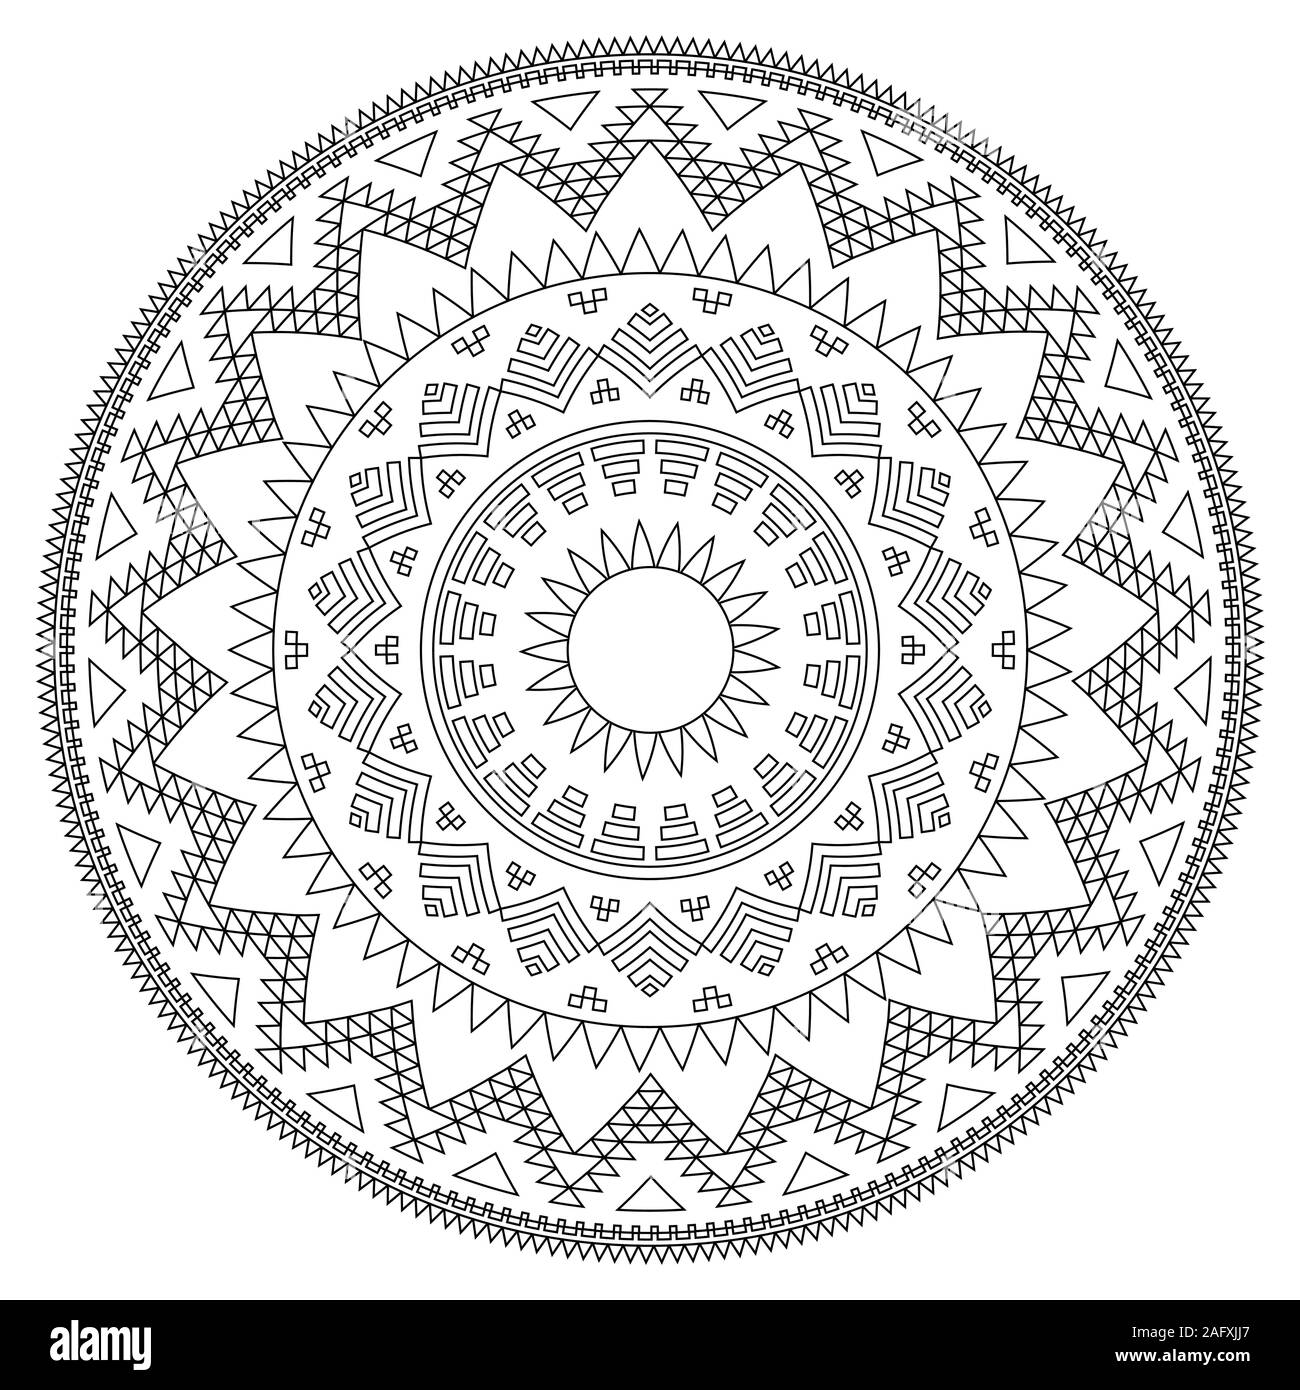 Mandala Anneaux Aztèques - Coloriage pour adulte à imprimer